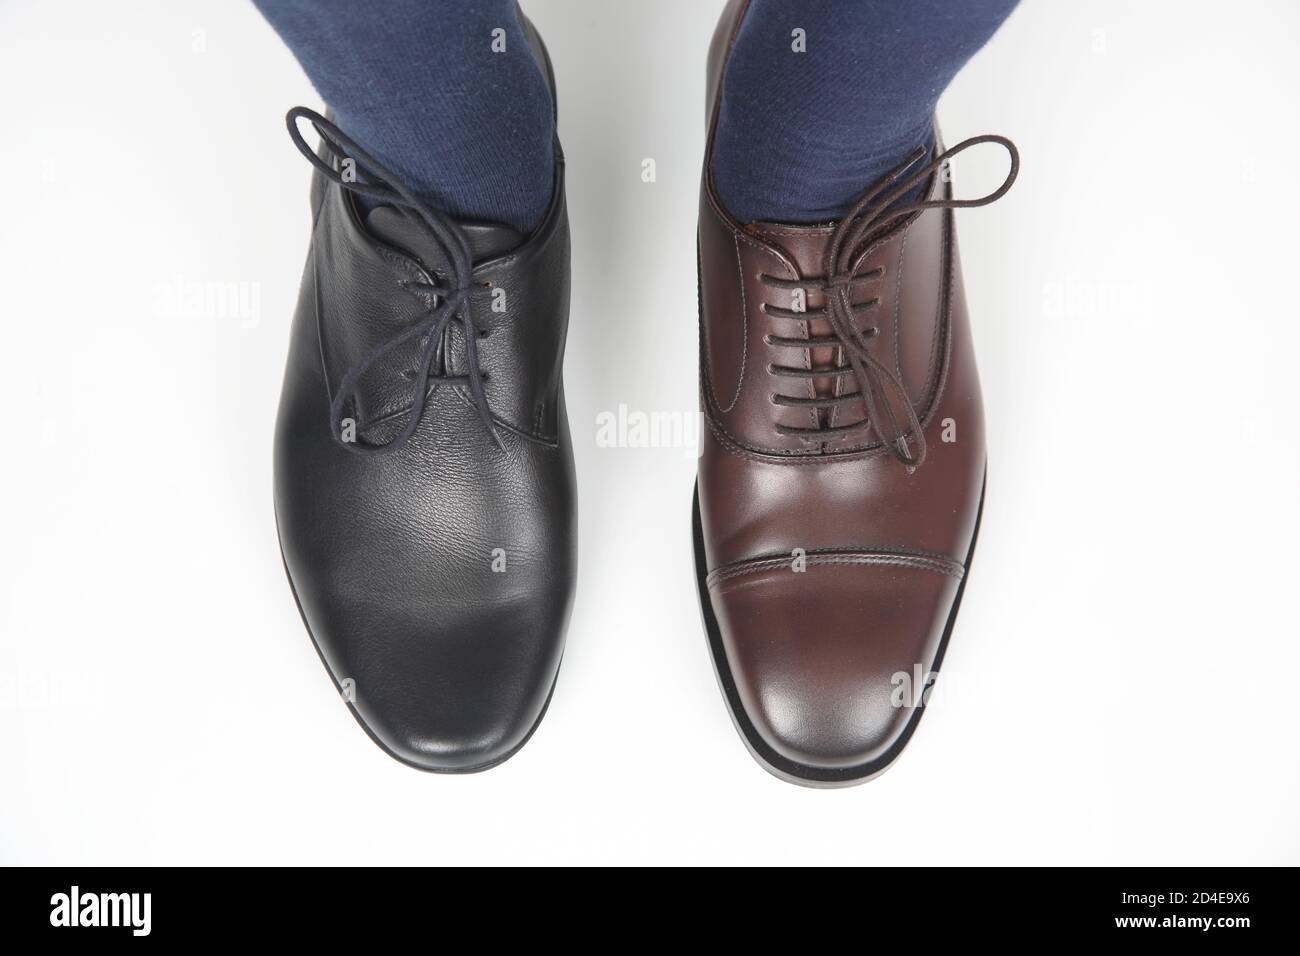 pies de hombre en zapatos clásicos marrones y negros Fotografía de stock -  Alamy